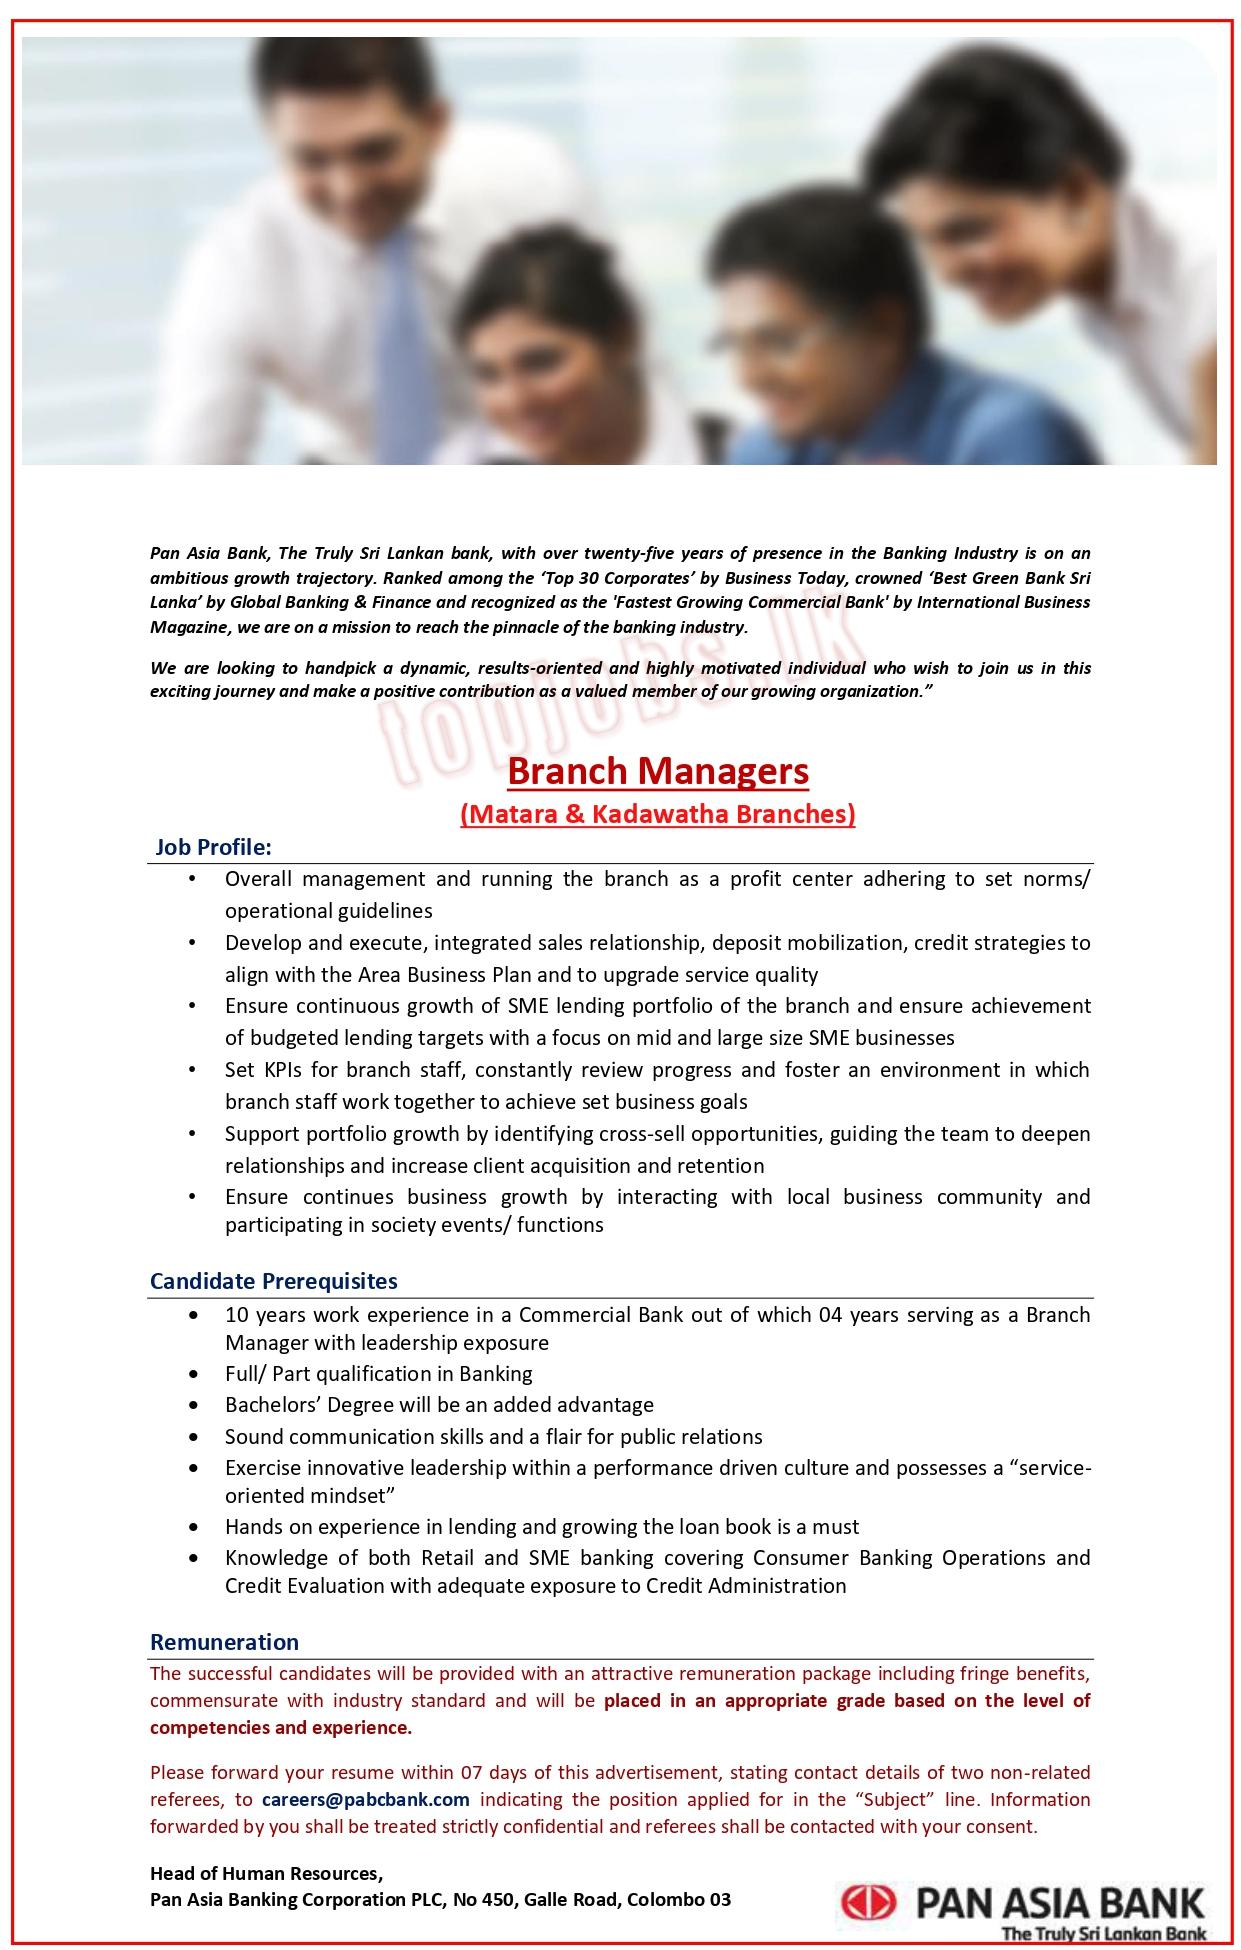 Branch Manager Vacancy at Kadawatha & Matara Pan Asia Bank